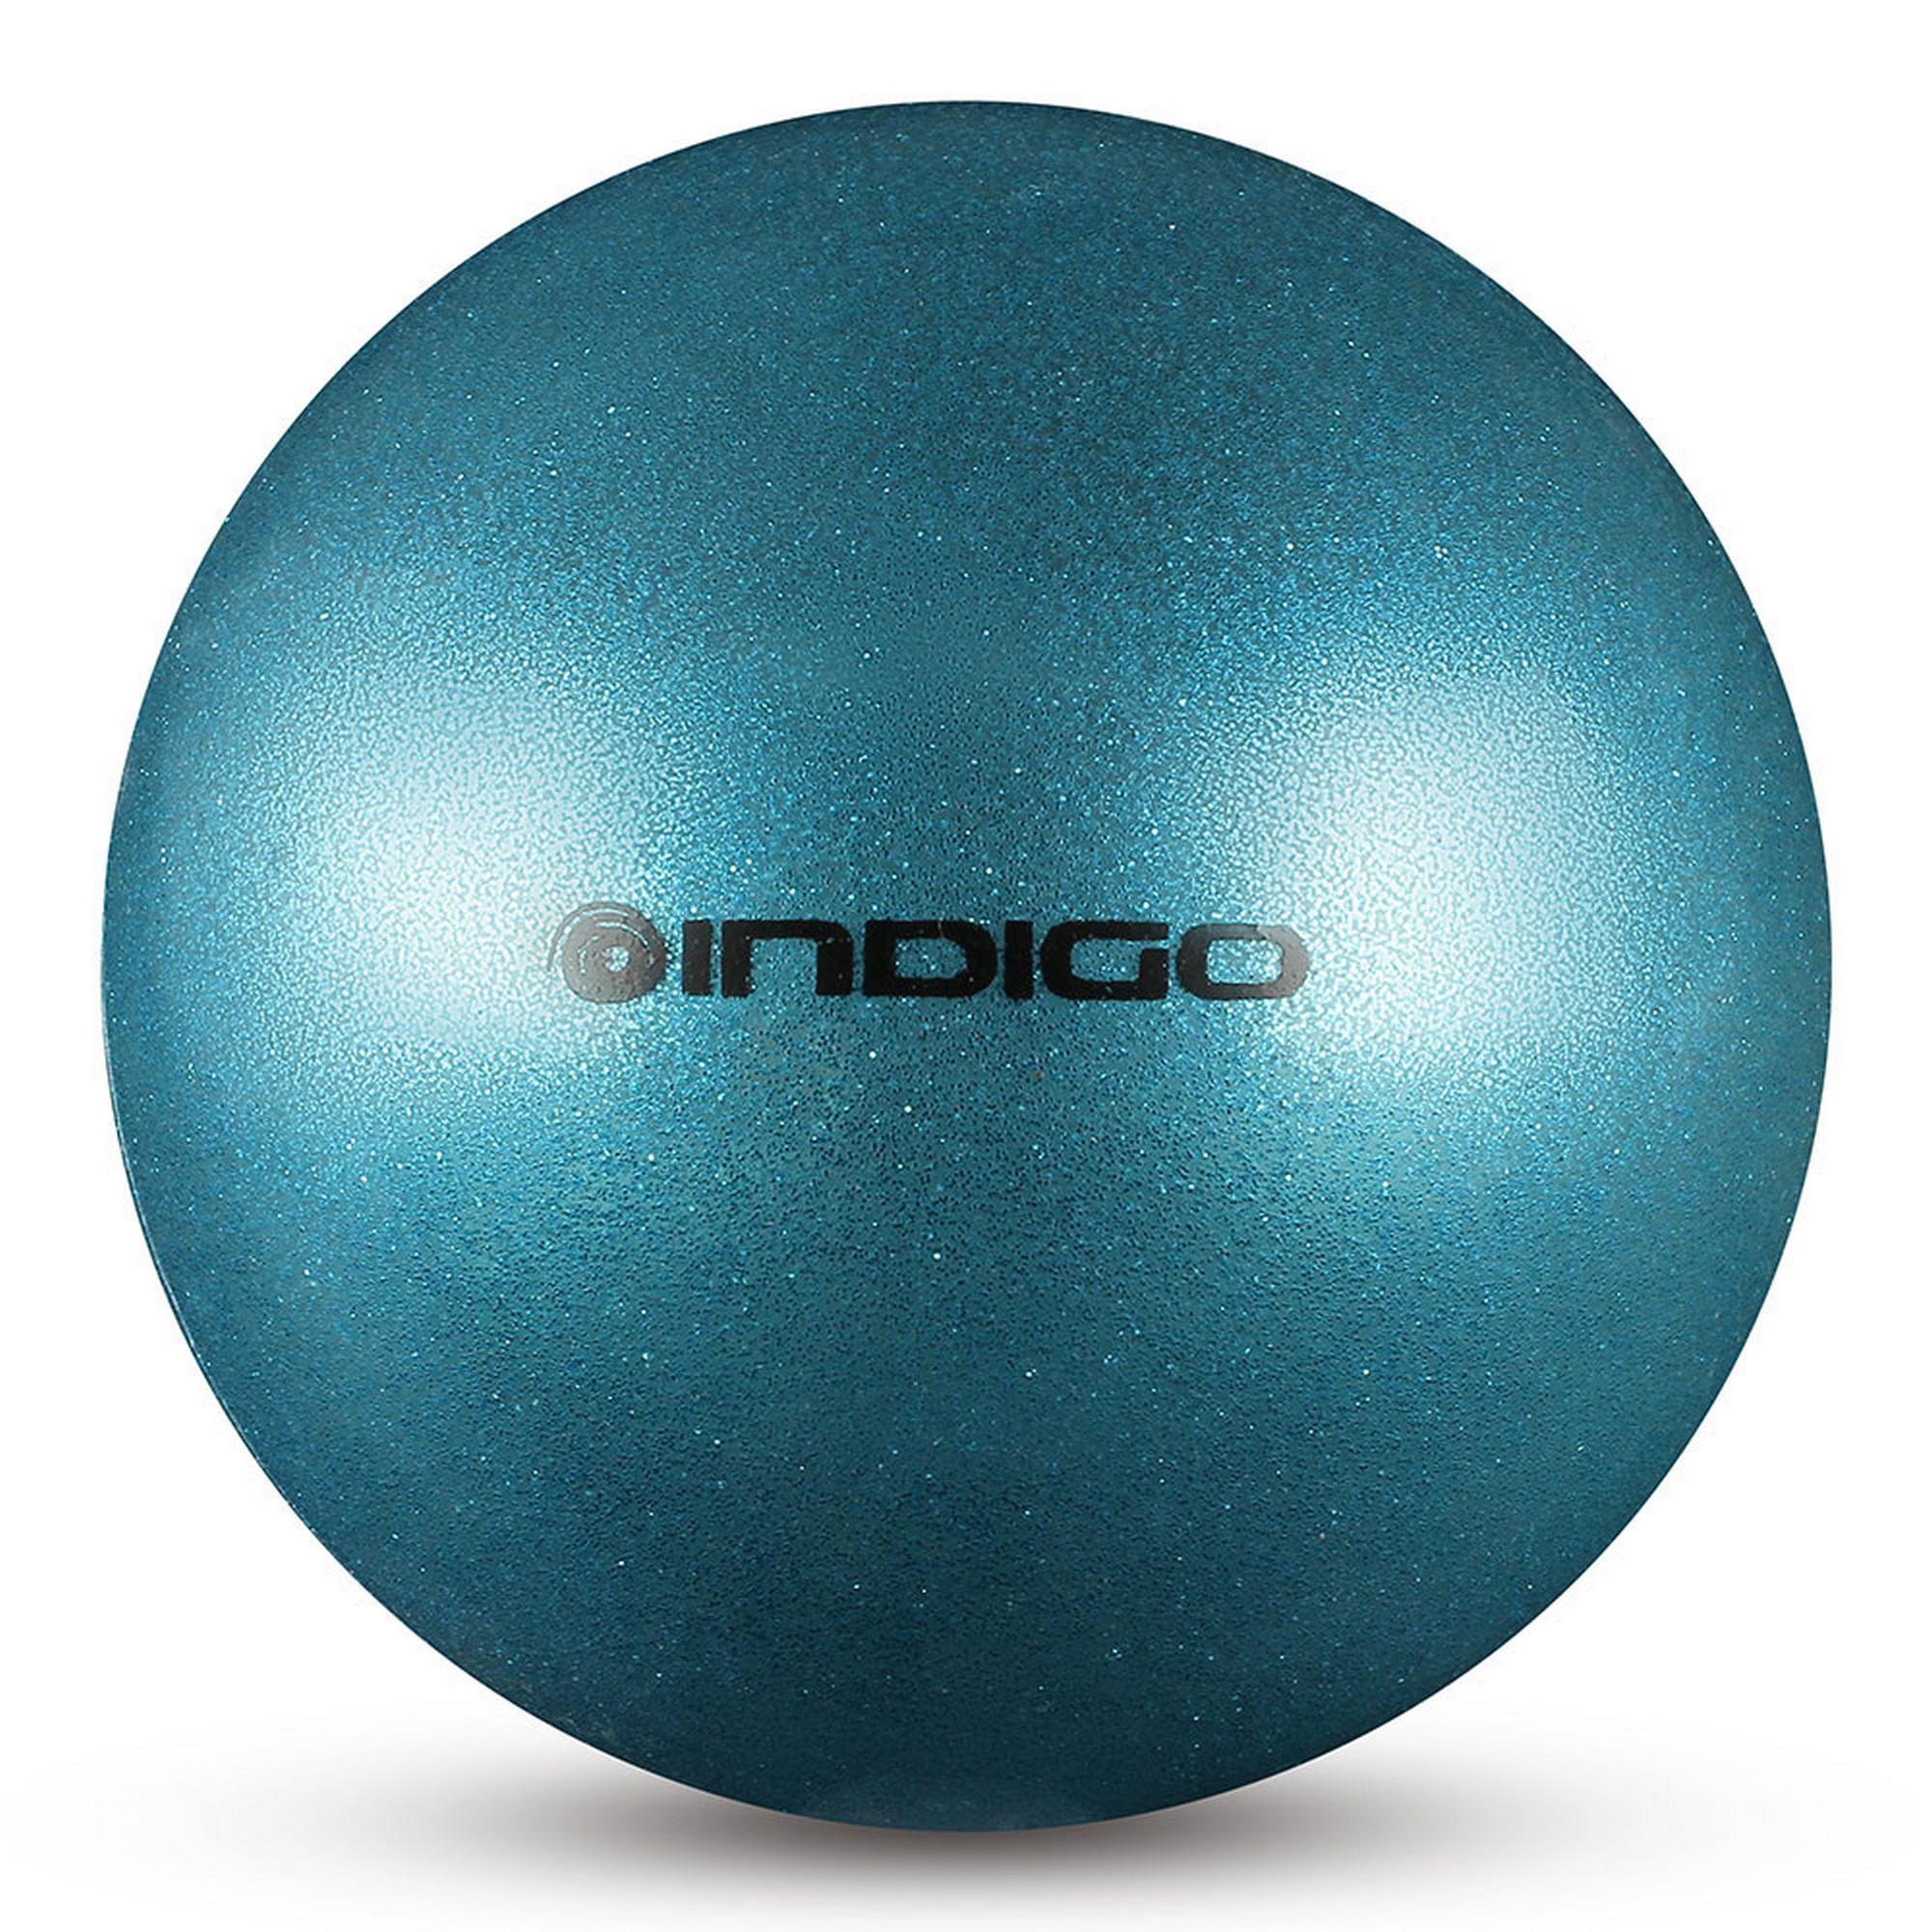 Мяч для художественной гимнастики d15см Indigo ПВХ IN119-LB голубой металлик с блестками 2000_2000